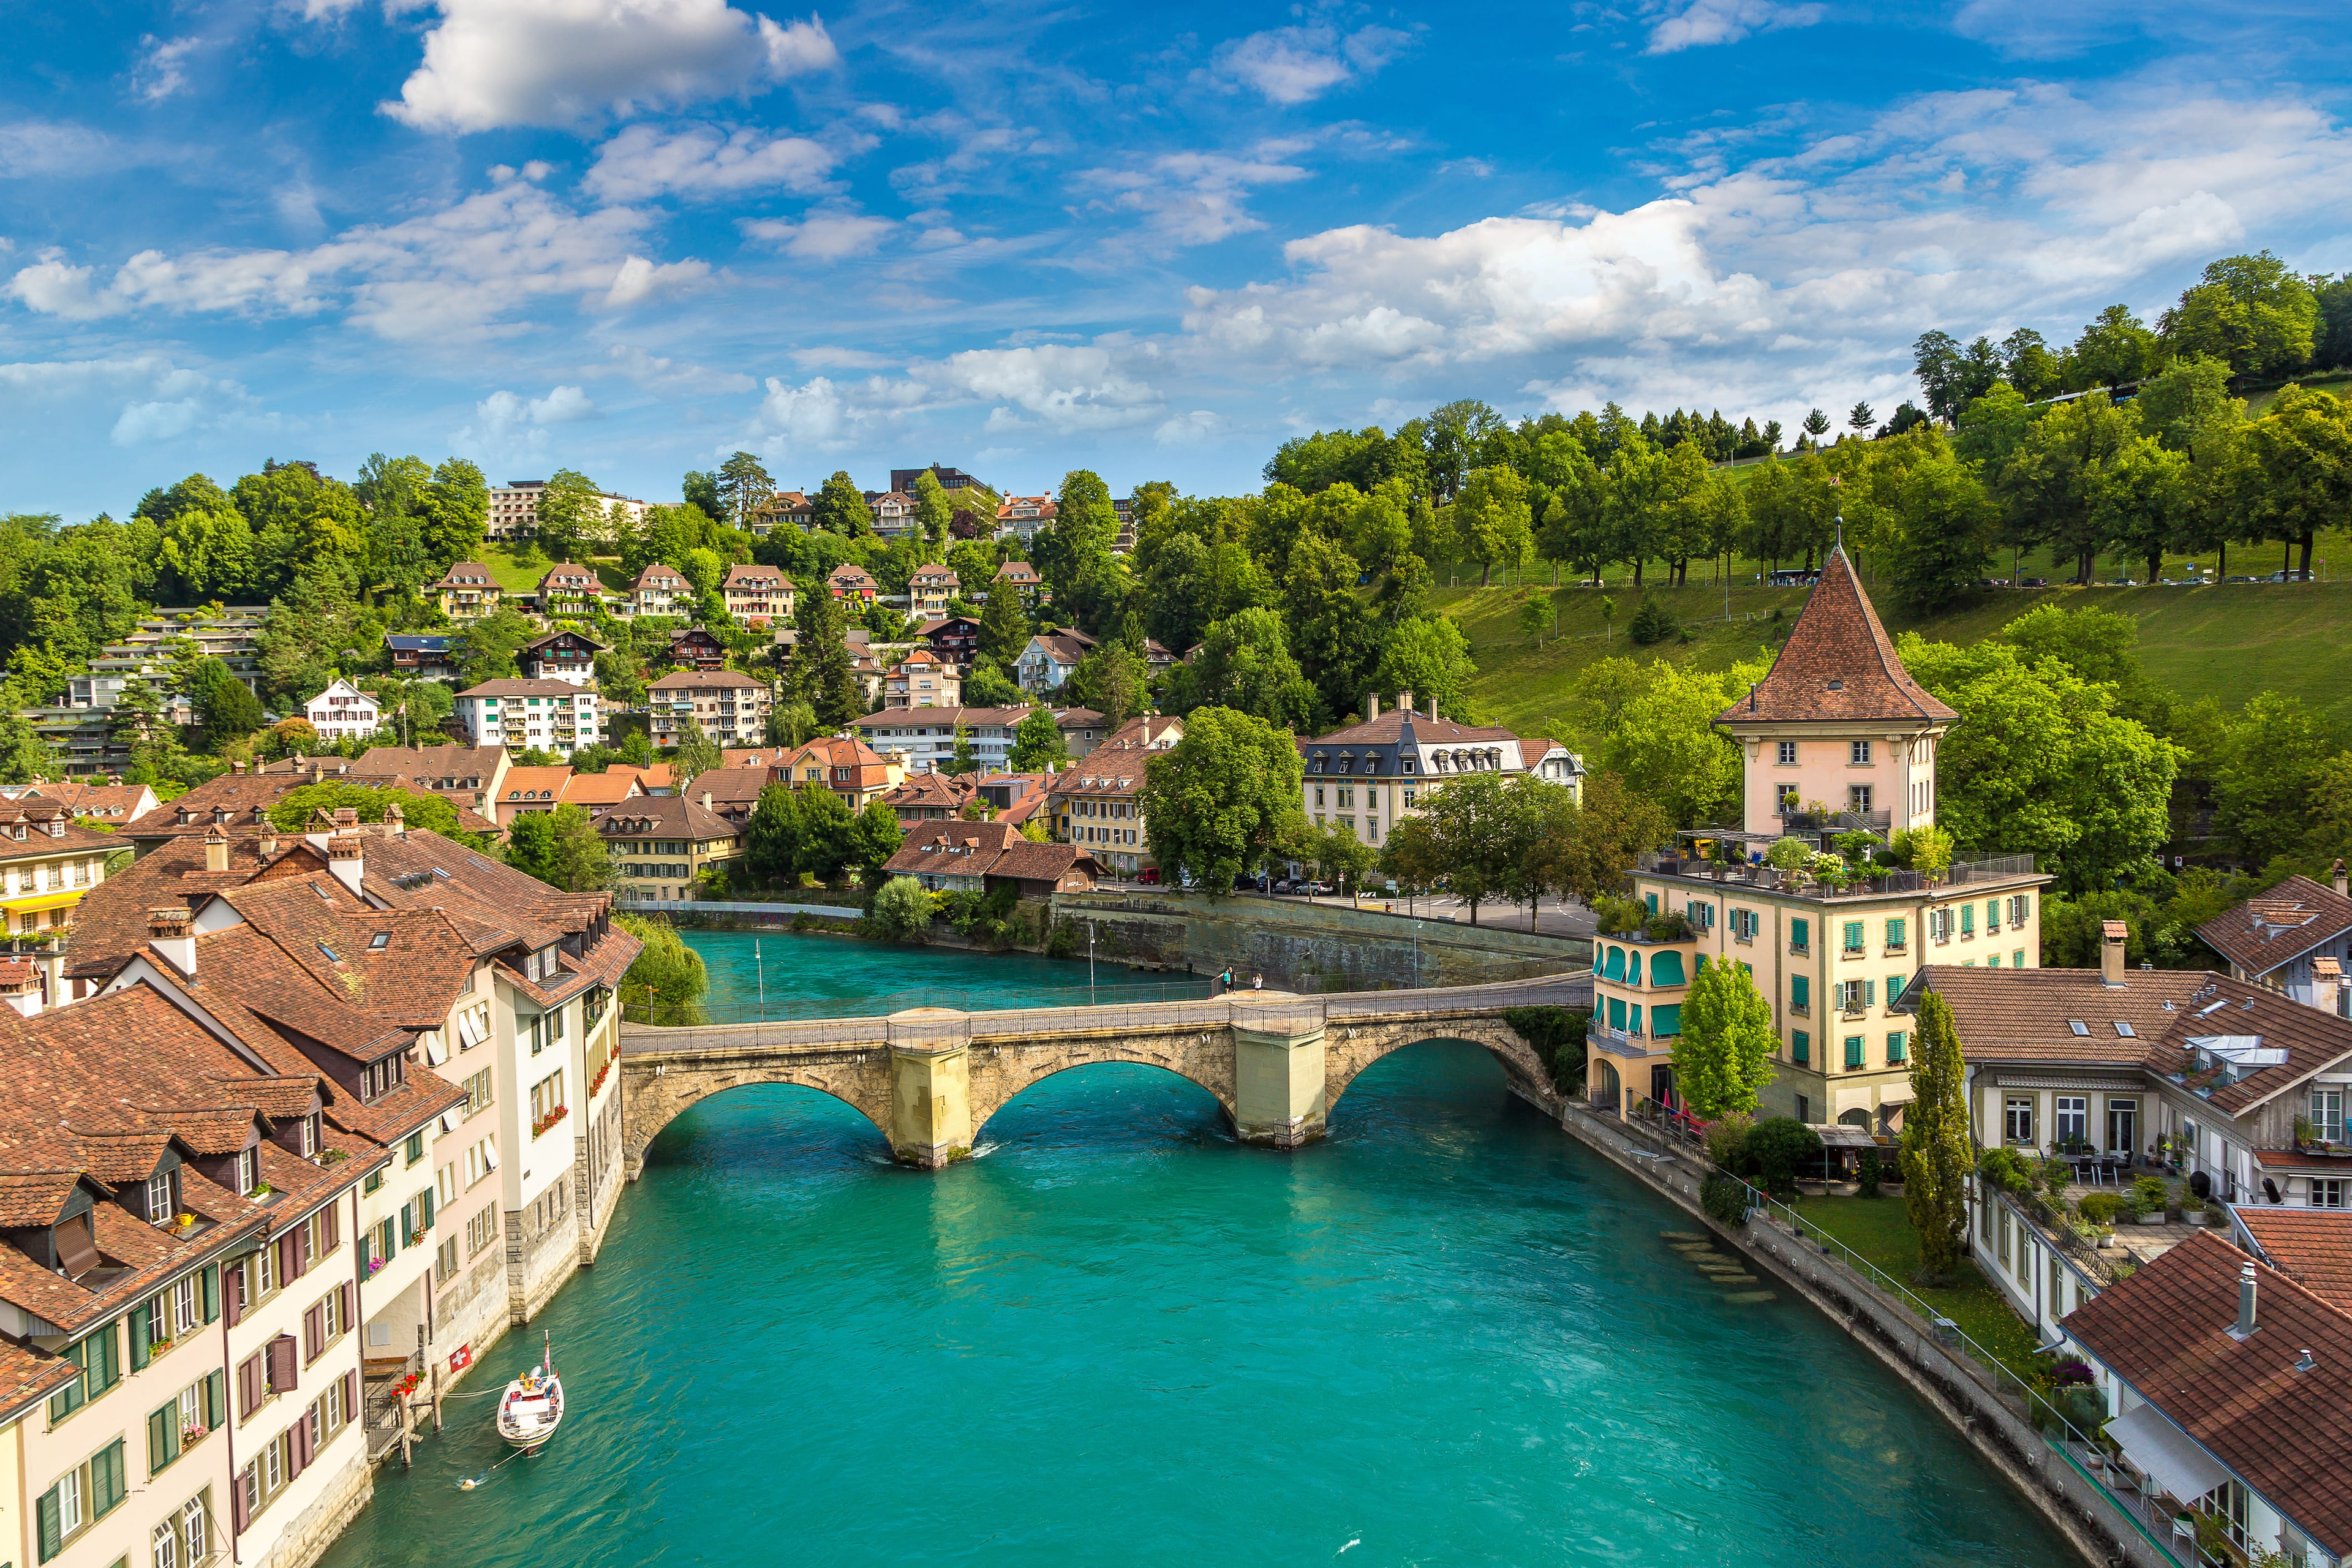 Bern in Switzerland - Peaceful, Pretty and Calm